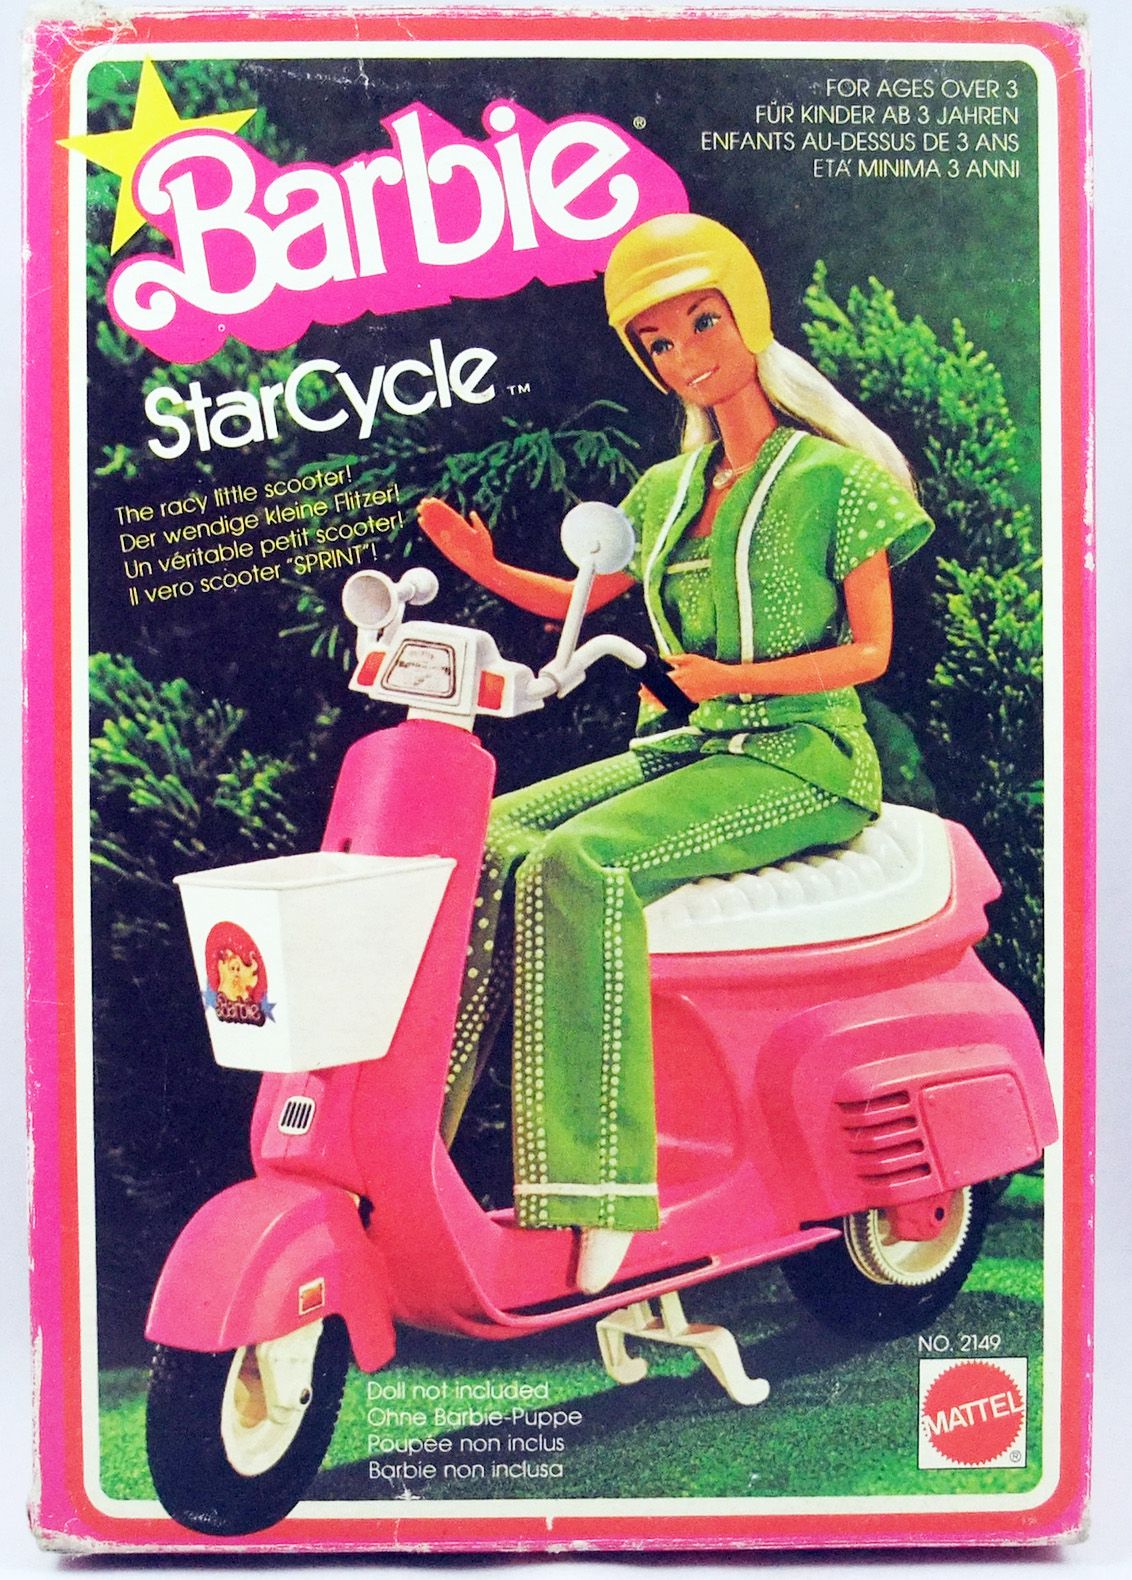 Aanval browser hebben Barbie - Barbie's StarCycle scooter - Mattel 1978 (ref.2149)